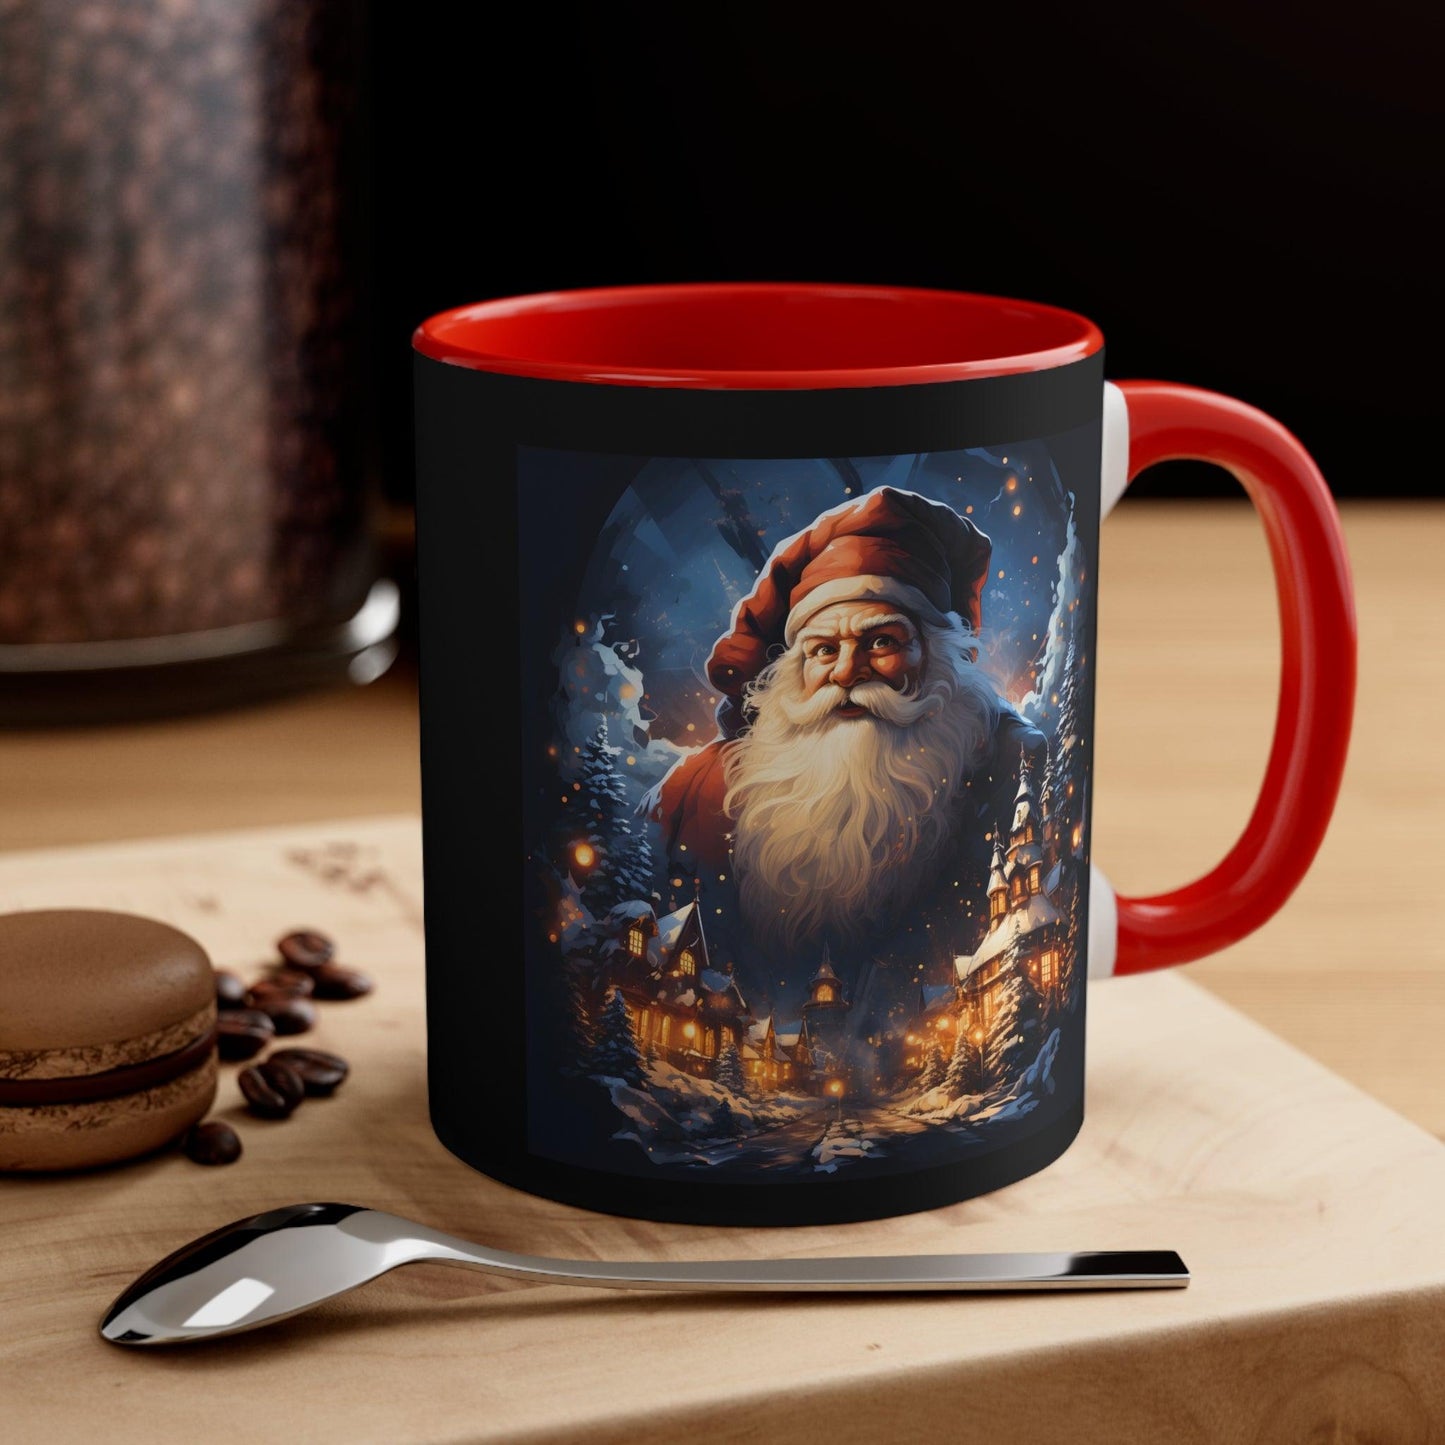 Santa Mug, Merry Christmas Coffee Mug, Christmas Coffee mug Hot Cocoa Mug 11oz Christmas Gift for Coffee lovers